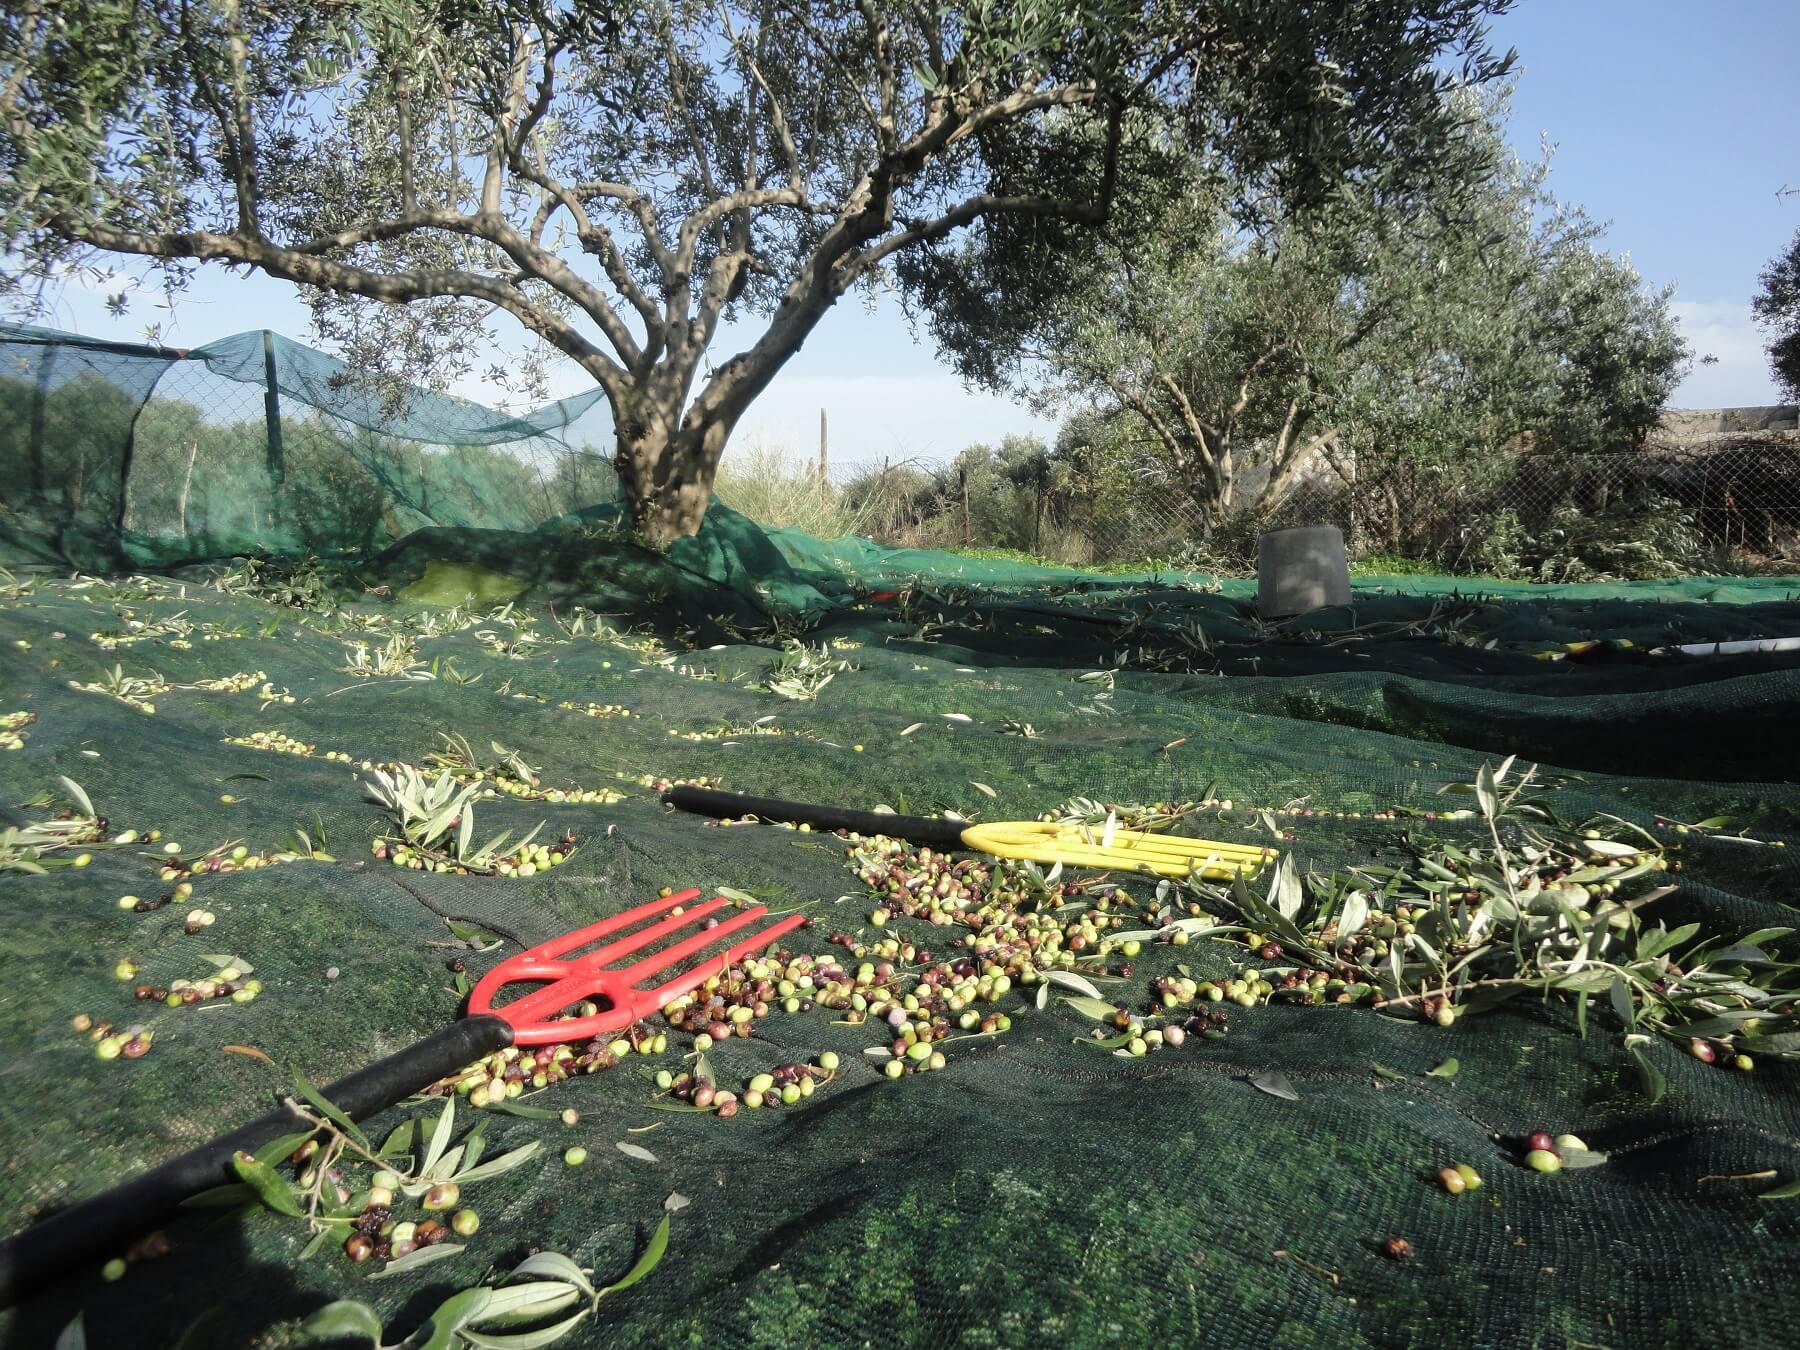 Produzione di olio d'oliva